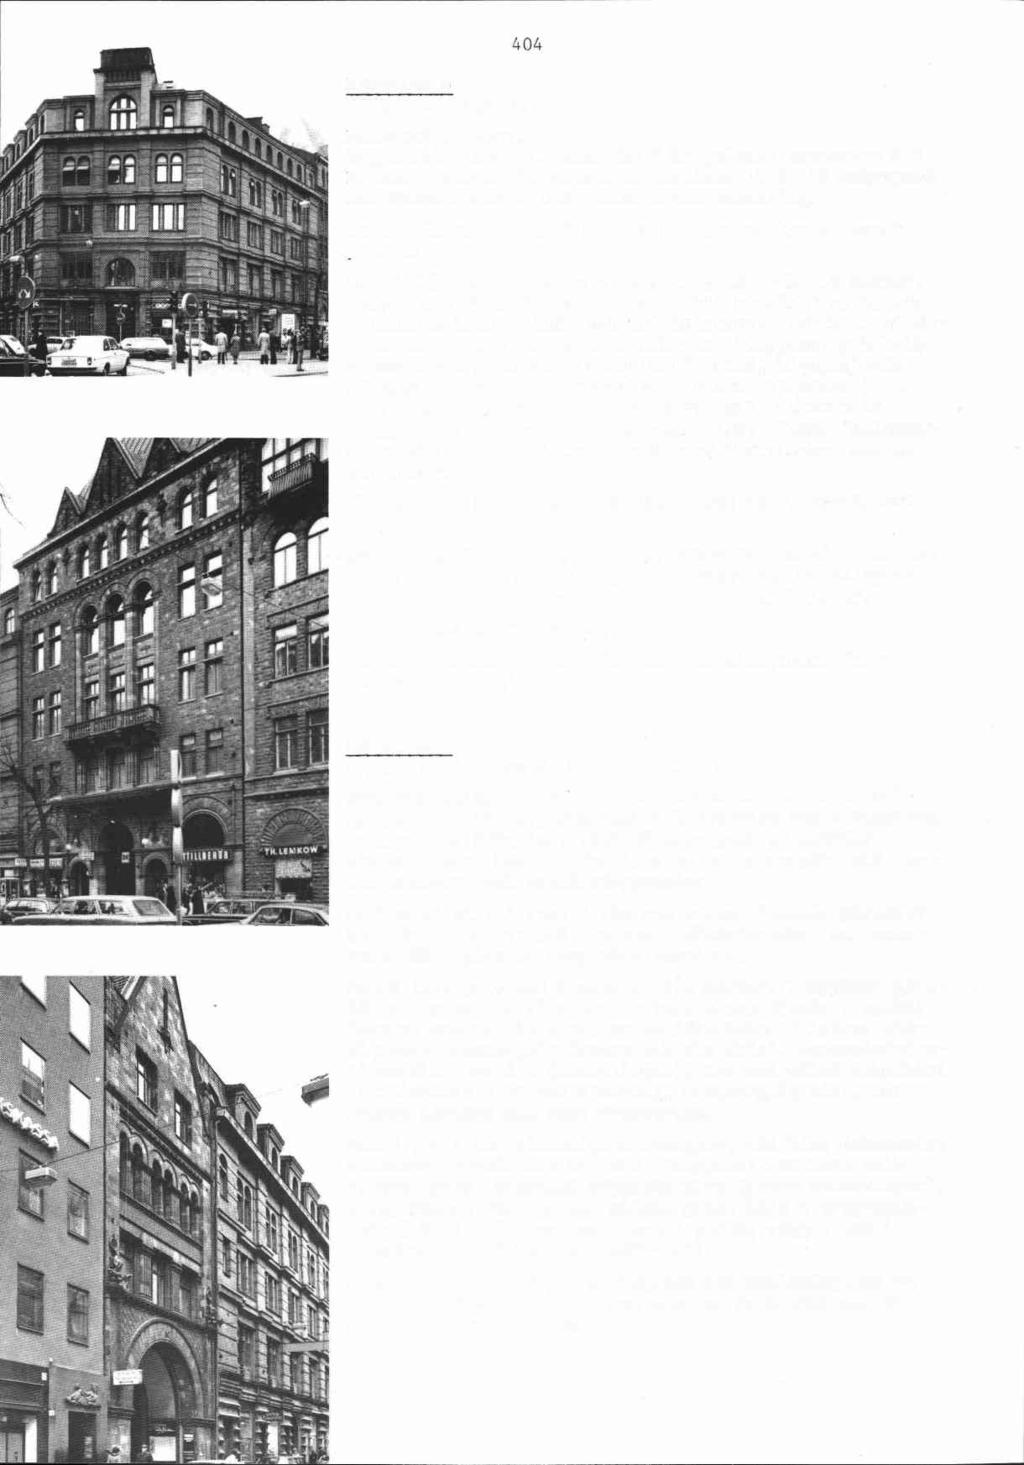 Rännilen 6 Birger Jarlsgatan 7 Kontorsfastighet. ~~ggnadssr 1884-87, arkitekt E Haegglund, byggherre A T Edlund. 1900-01 inredande av bostäder. 1907-09 ombyggnad för Patentverket.